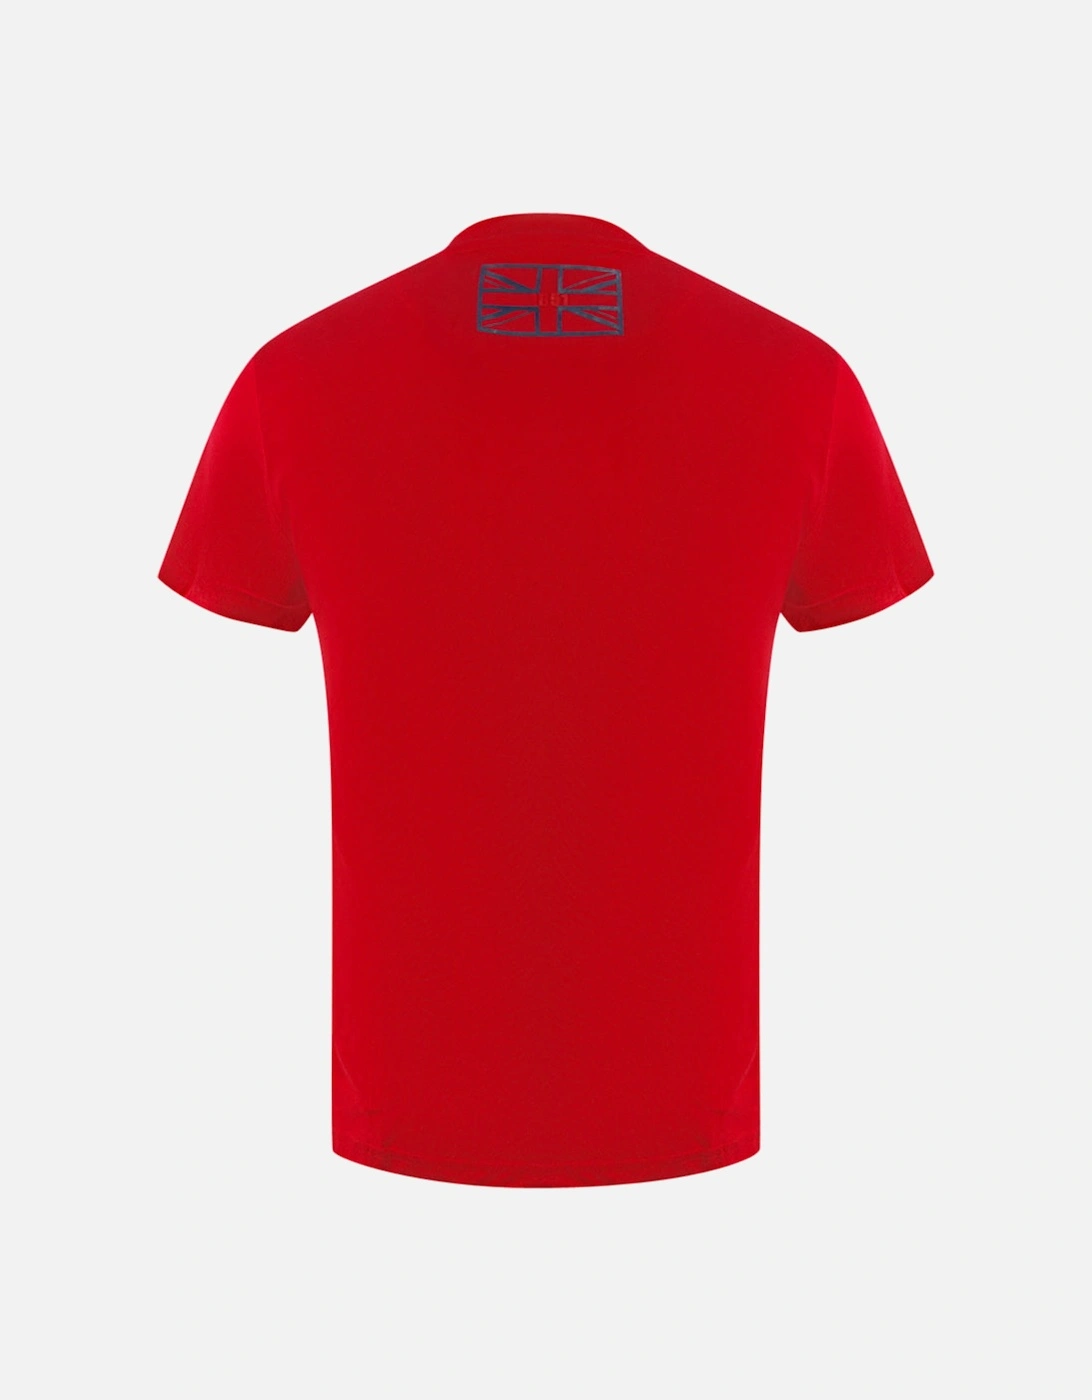 London Circle Logo Red T-Shirt